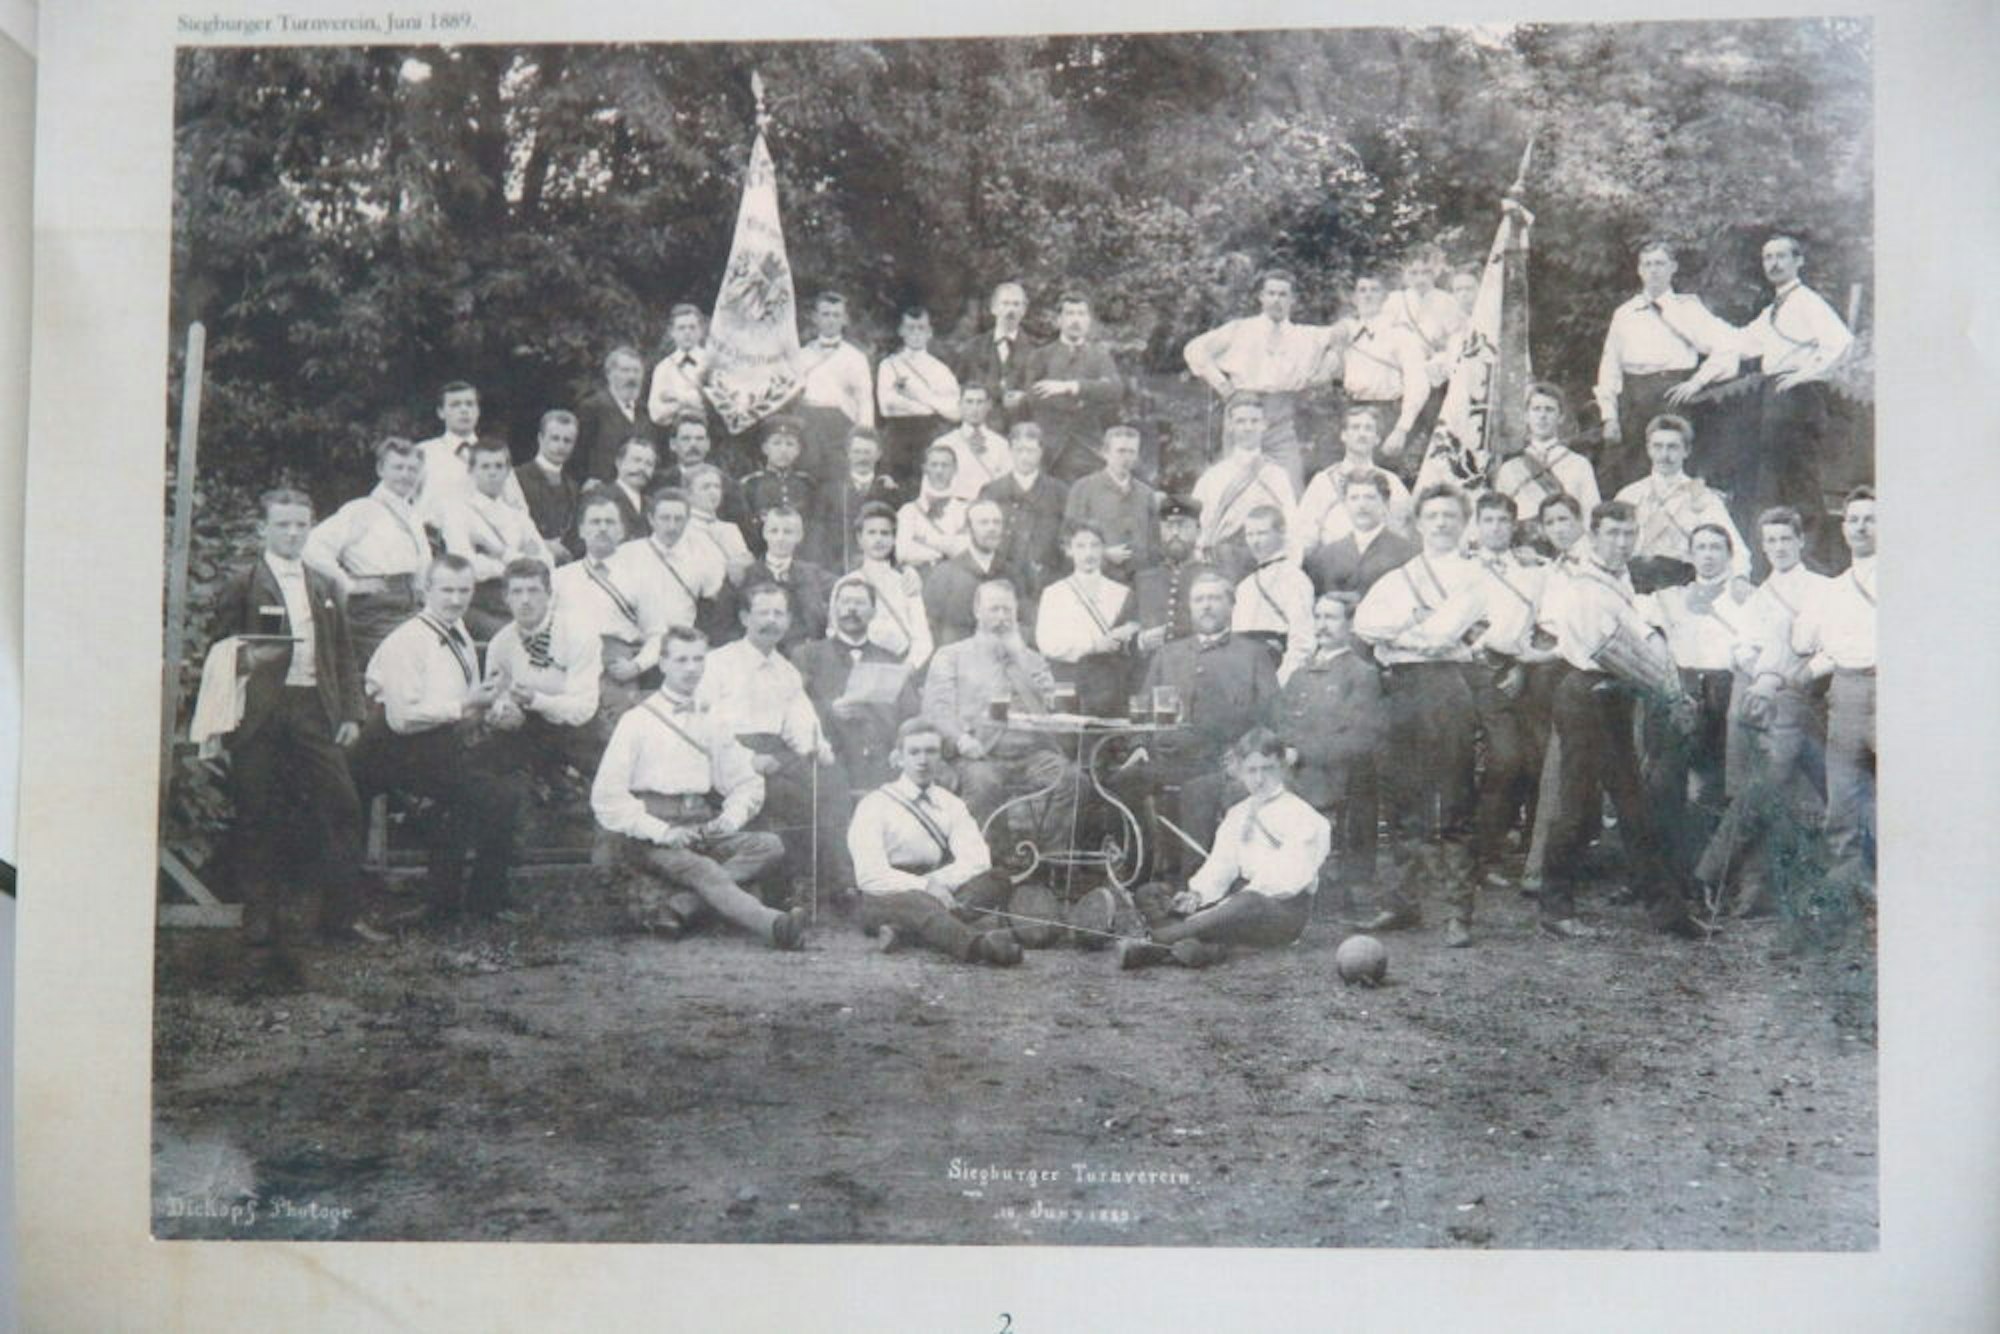 Das gesellige Leben spielte beim Siegburger Turnverein immer eine Rolle, so auch bei einem Ausflug mit den Vereinsflaggen.